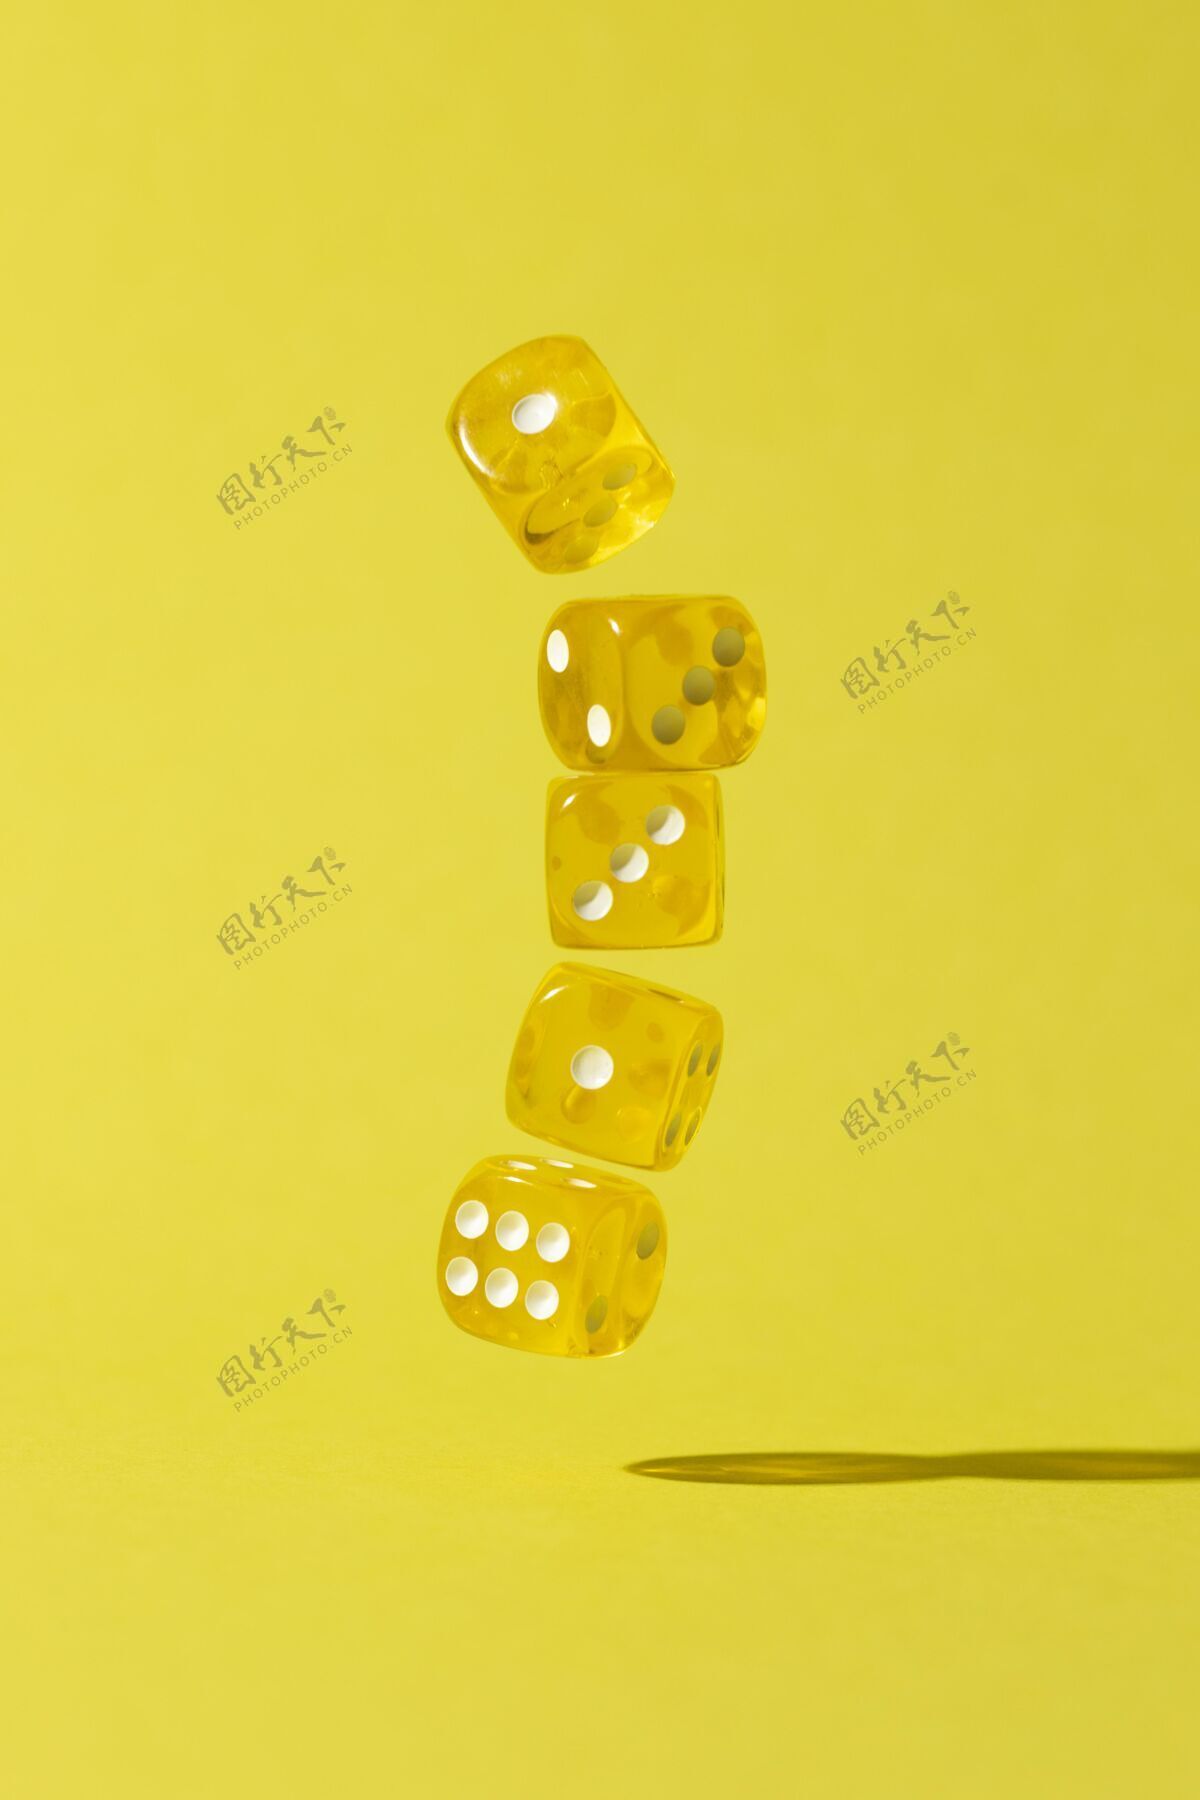 游戏落在黄色背景上的黄色黄色幸运跌倒